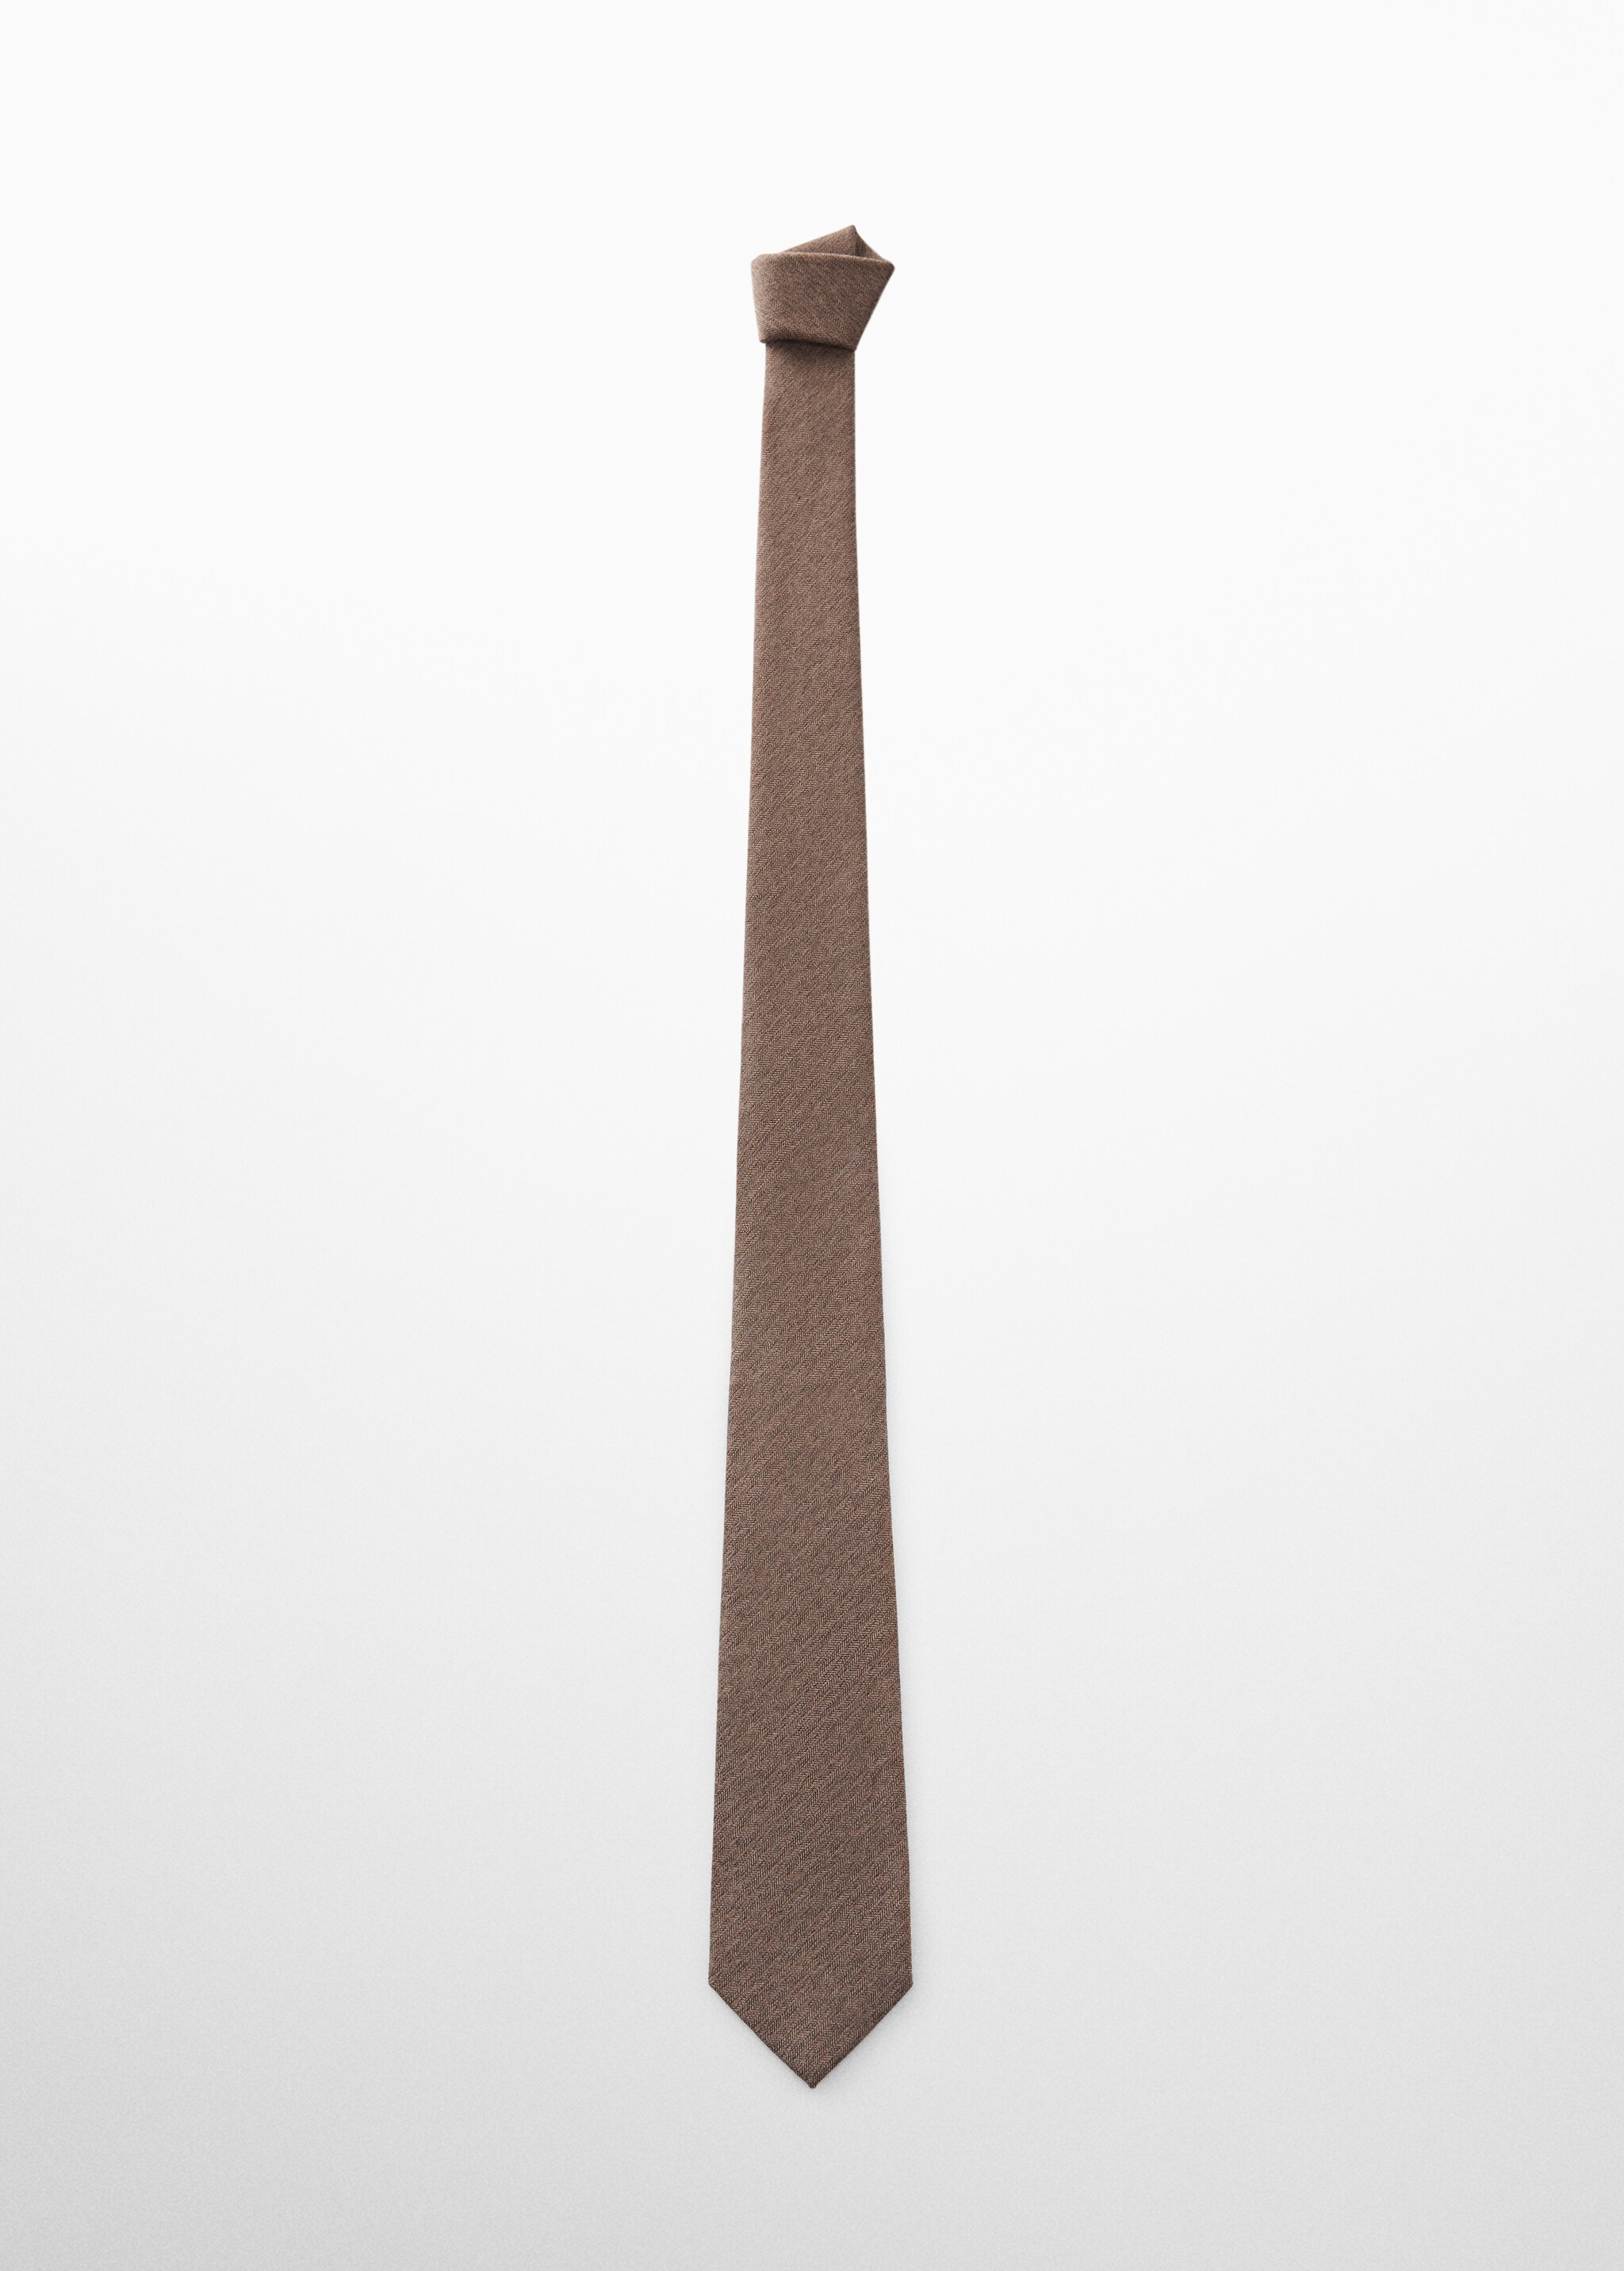 ربطة عنق من حرير التوت المتعرجة - منتج دون نموذج